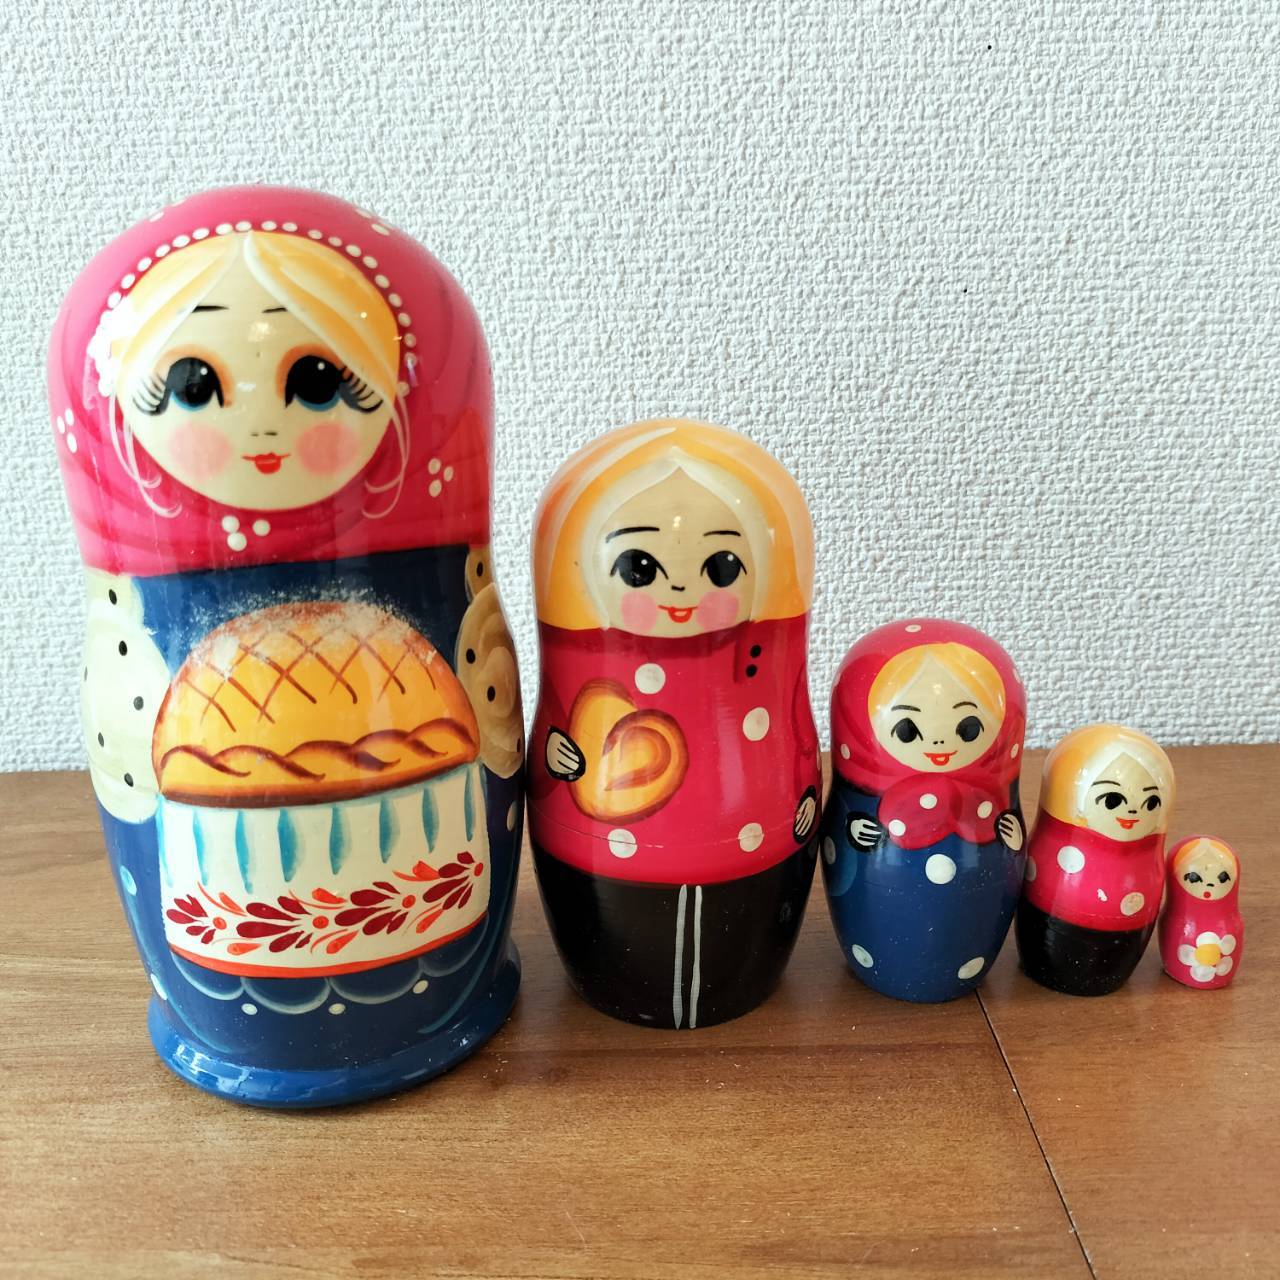 【MTP104】北欧ロシア雑貨のマトリョーシカ(大) 【パンのおもてなし】